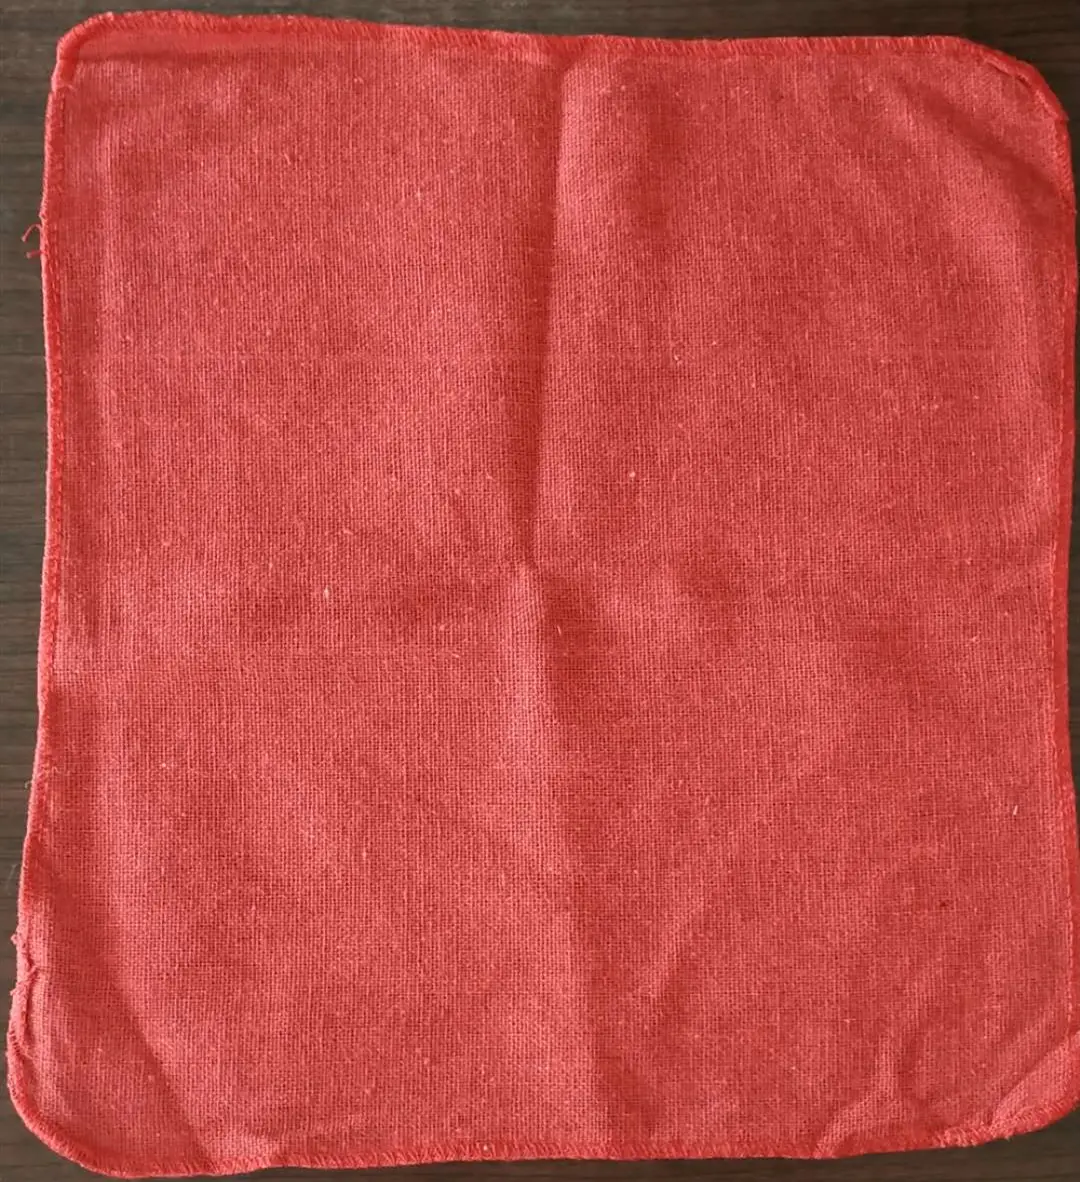 Stracci per asciugamani da negozio in tessuto di cotone ad asciugatura rapida rossi ad asciugatura rapida in cotone industriale